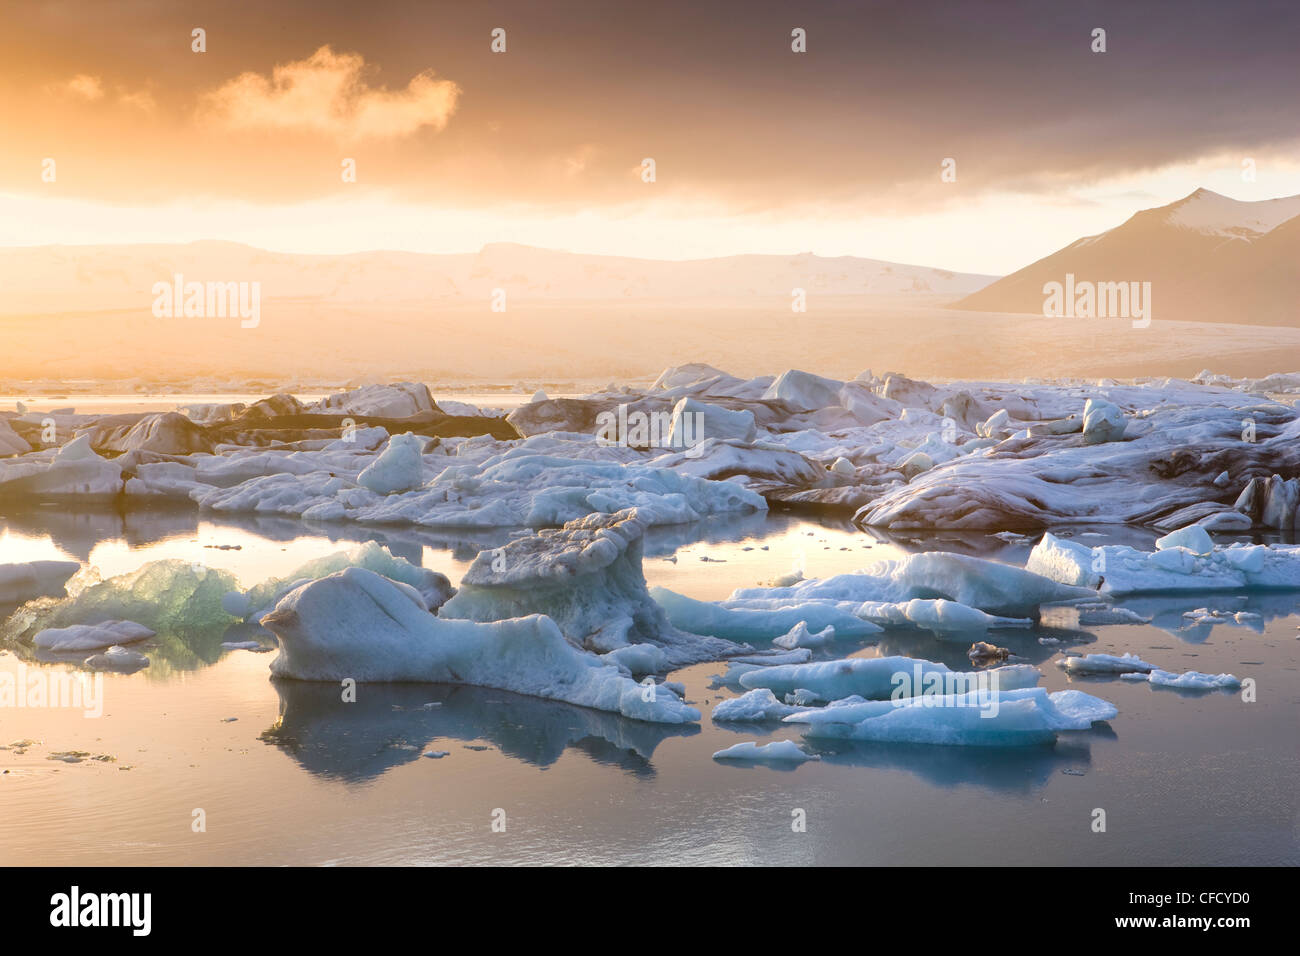 Icebergs,on the Jokulsarlon glacial lagoon at sunset, Iceland, Polar Regions Stock Photo